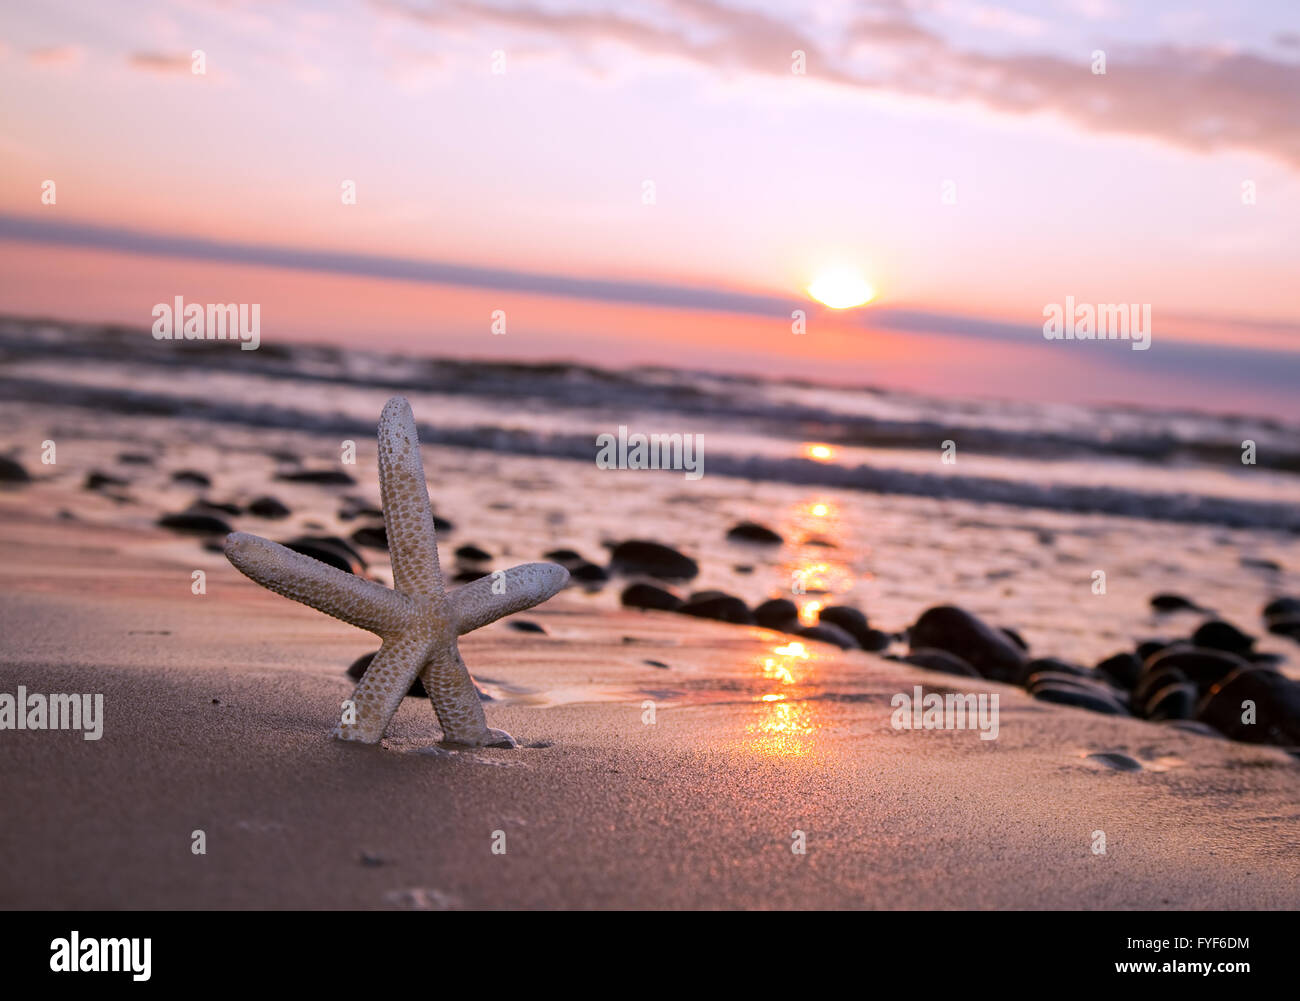 Seestern am Strand von romantischen Sonnenuntergang Stockfoto